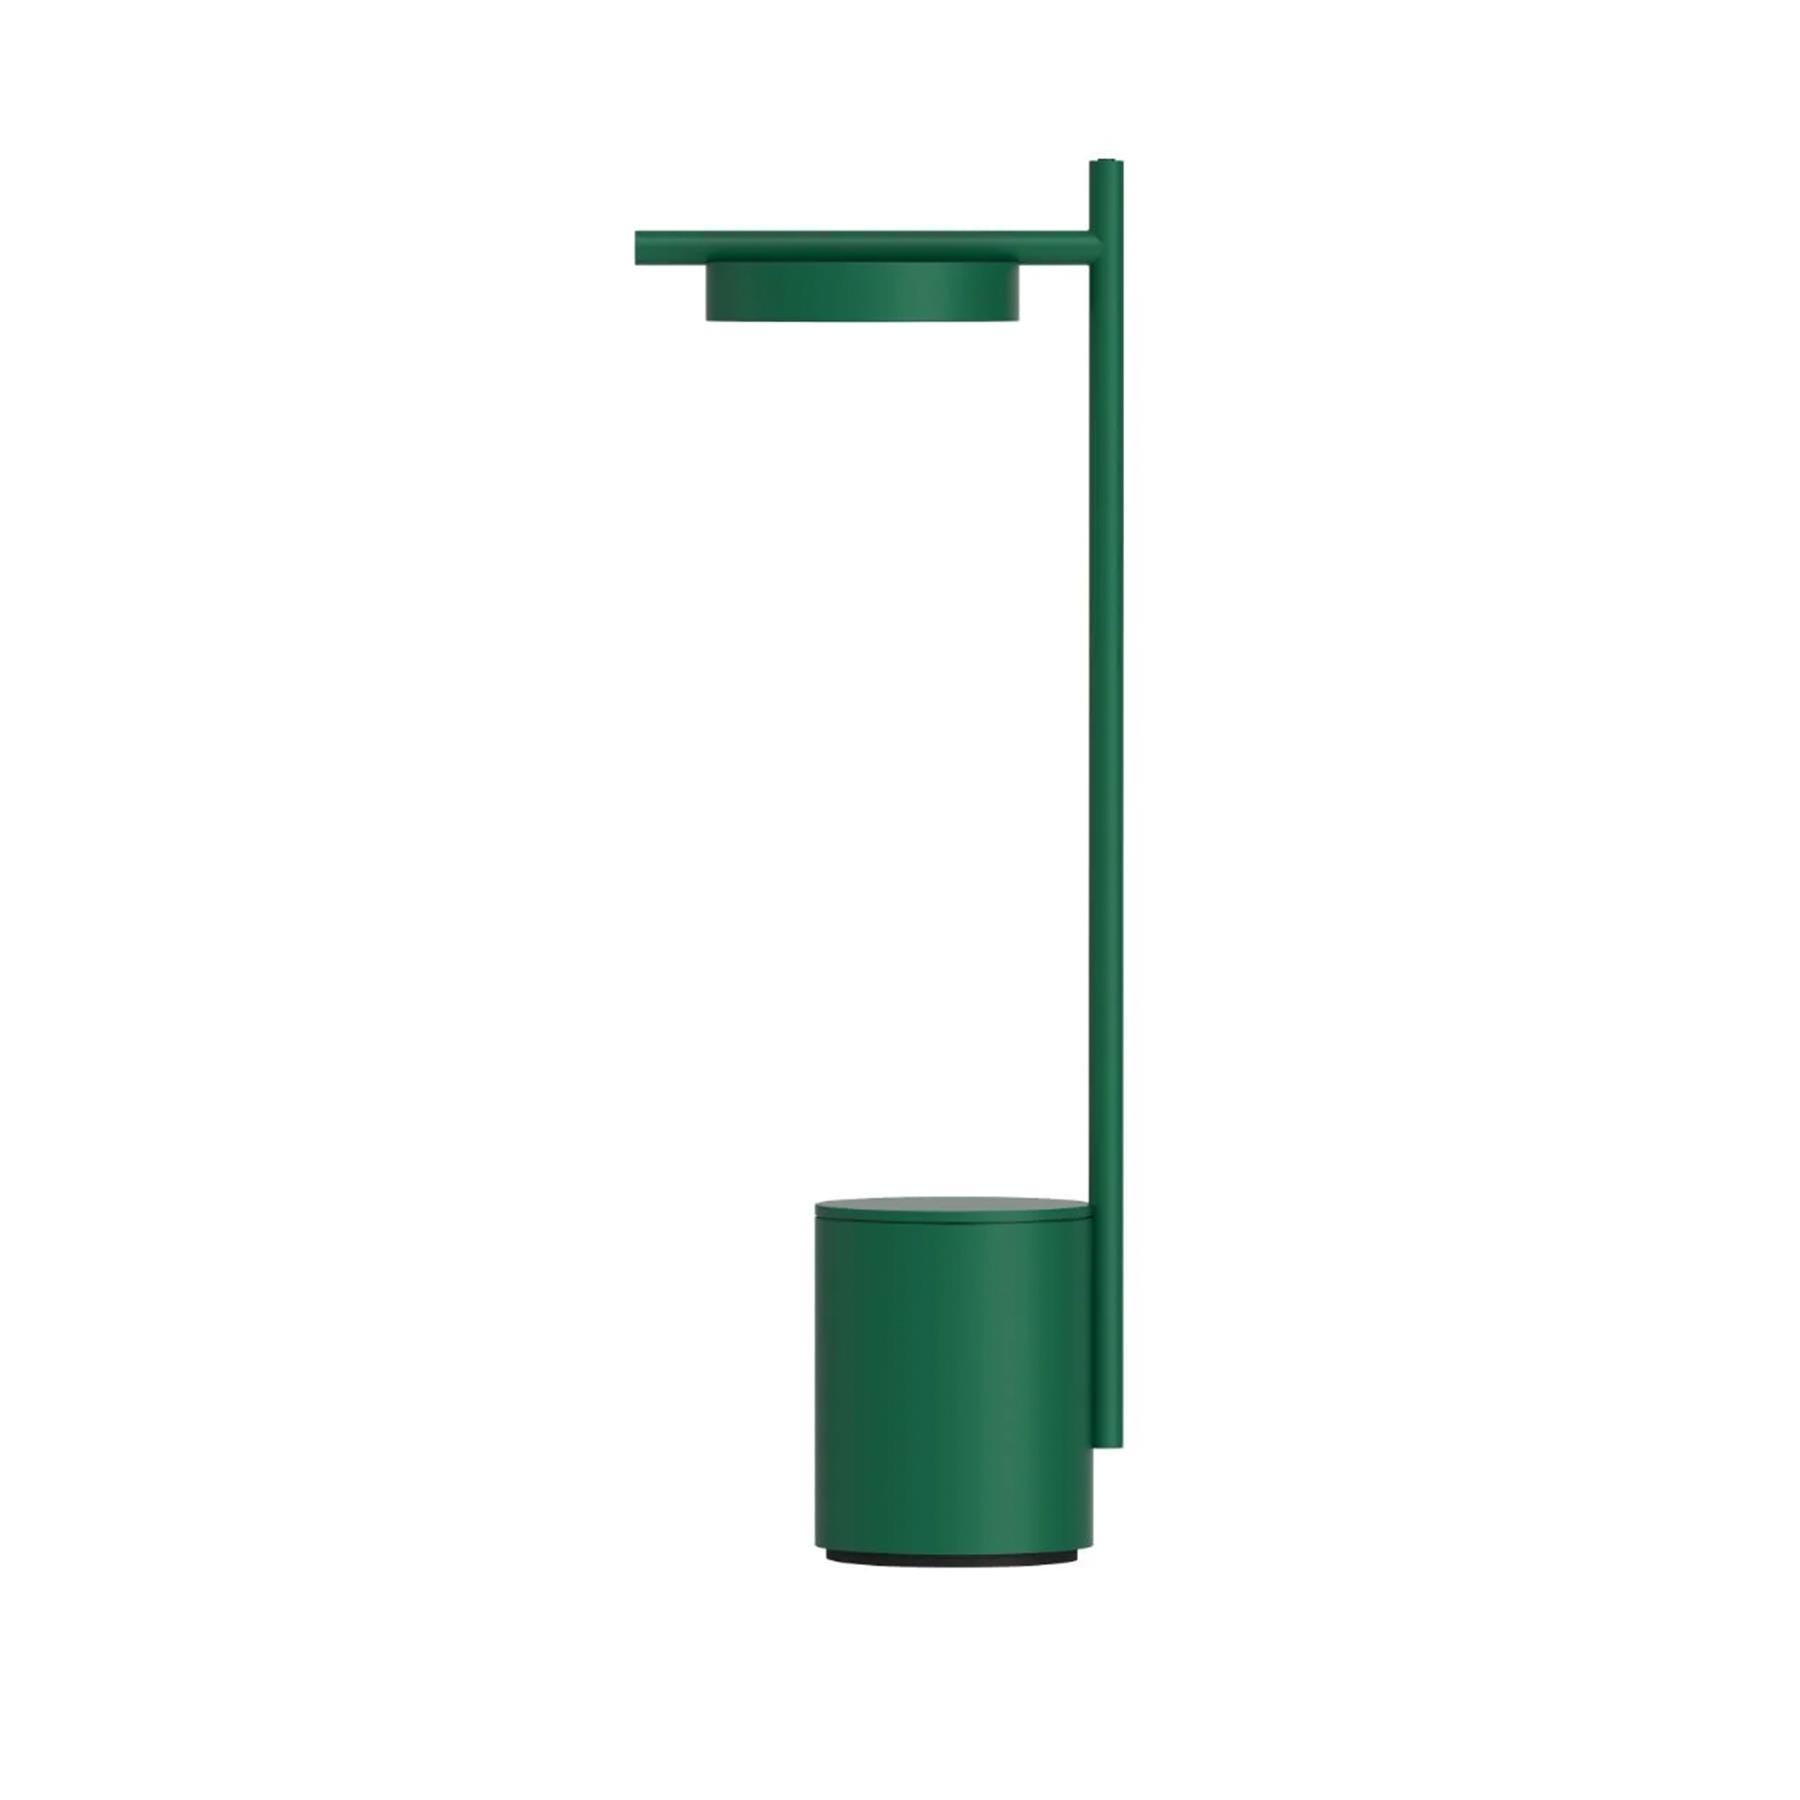 Grupa Igram Portable Table Lamp I Shape Green Designer Lighting From Holloways Of Ludlow